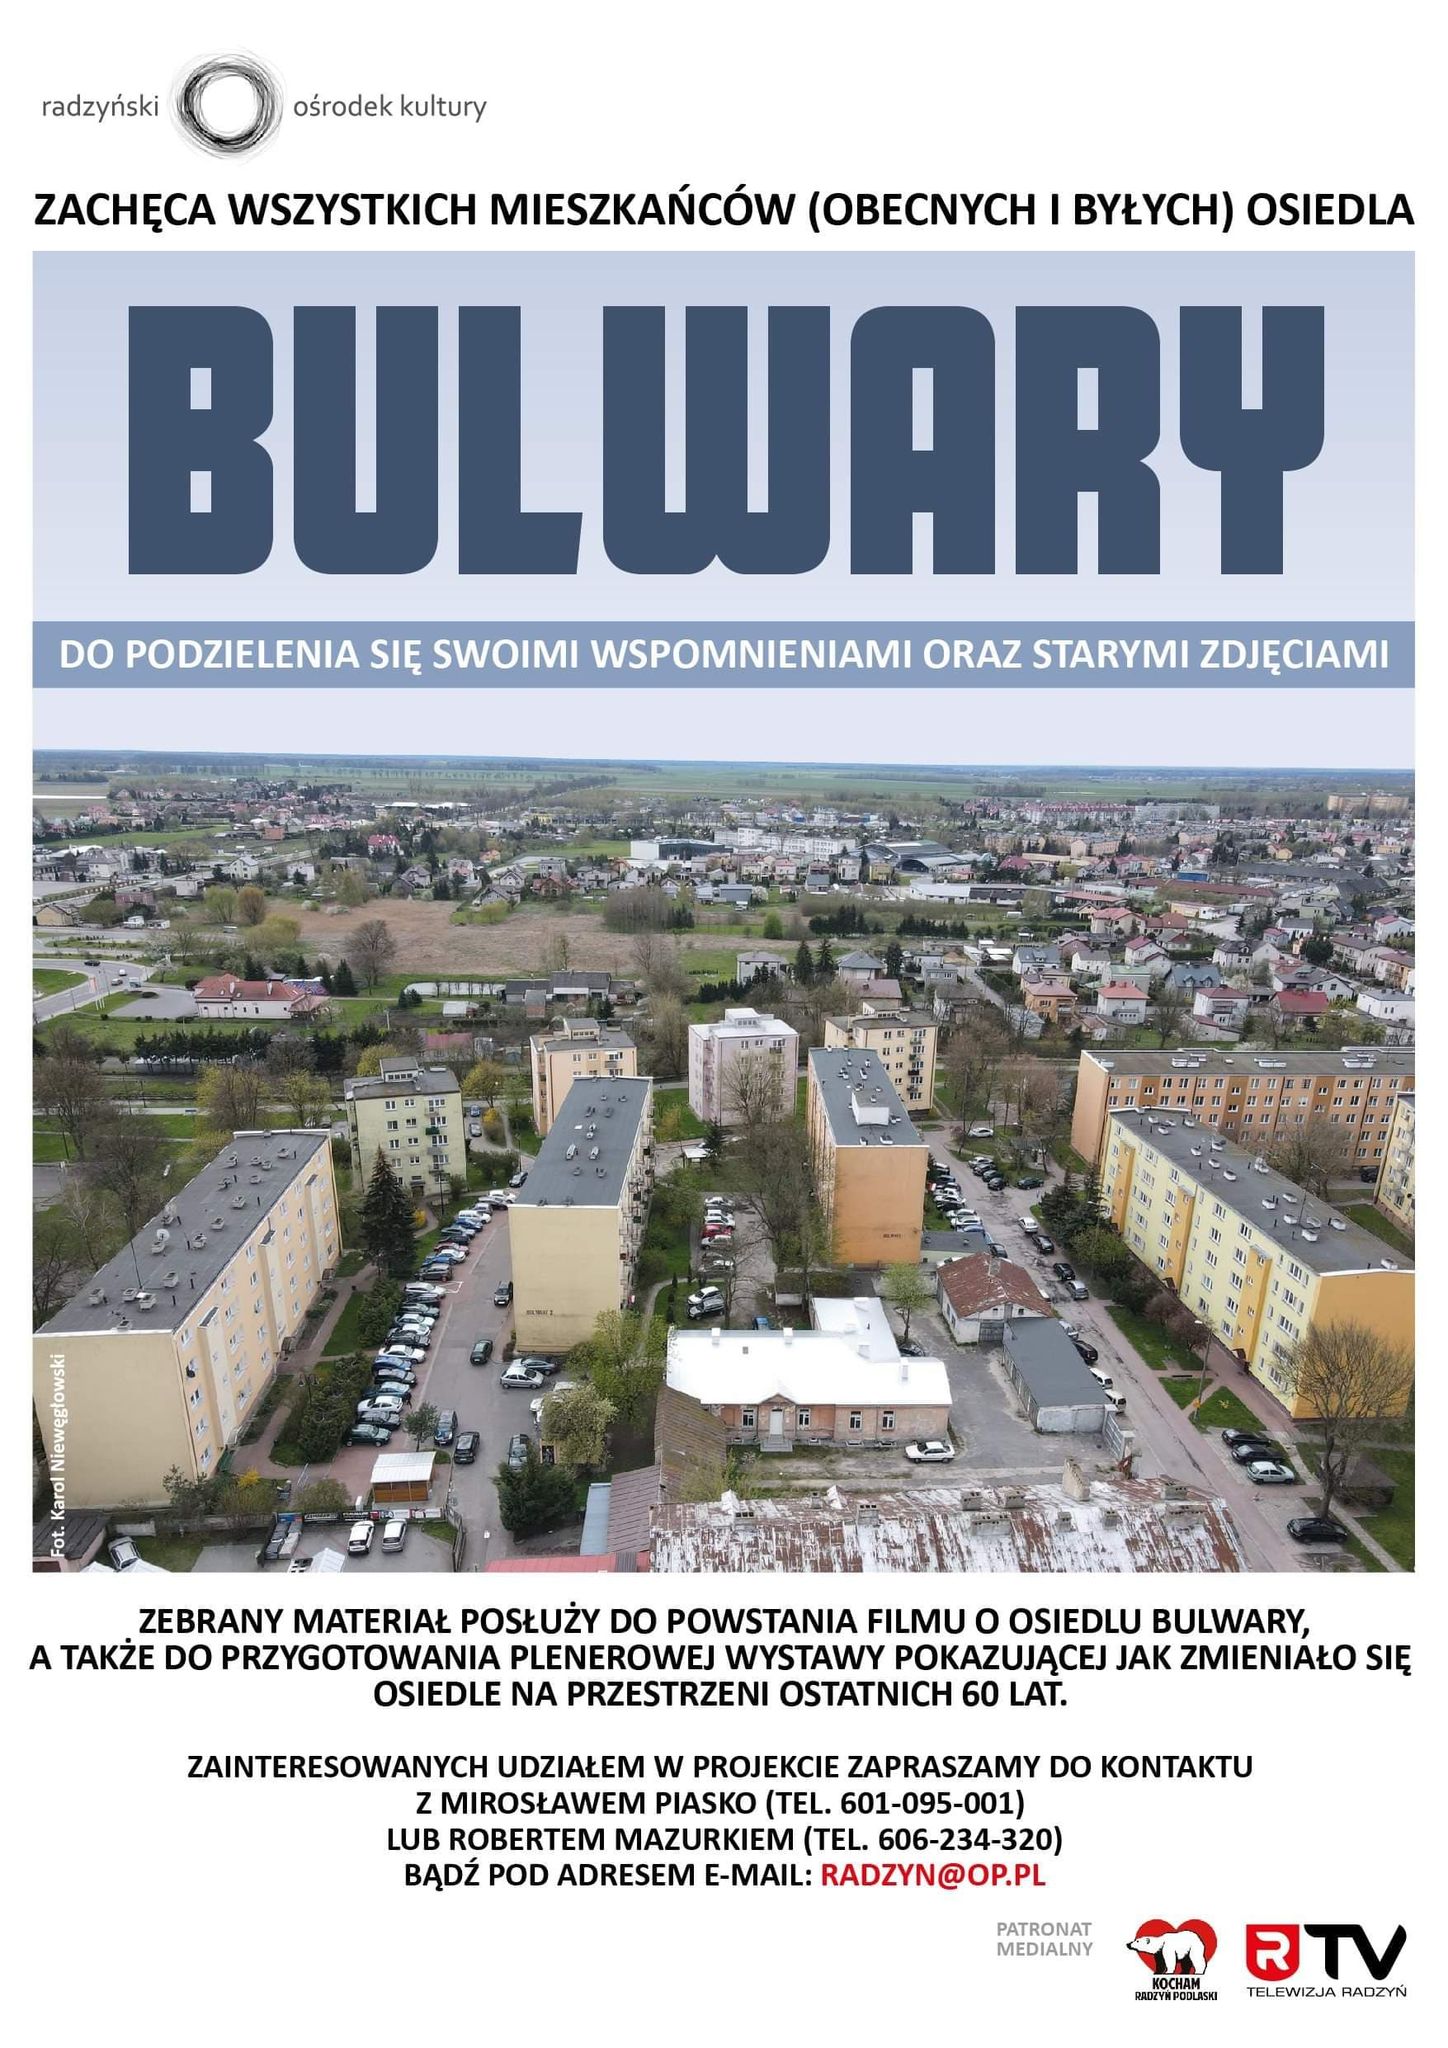 Powstanie film i wystawa o osiedlu Bulwary w Radzyniu - Zdjęcie główne